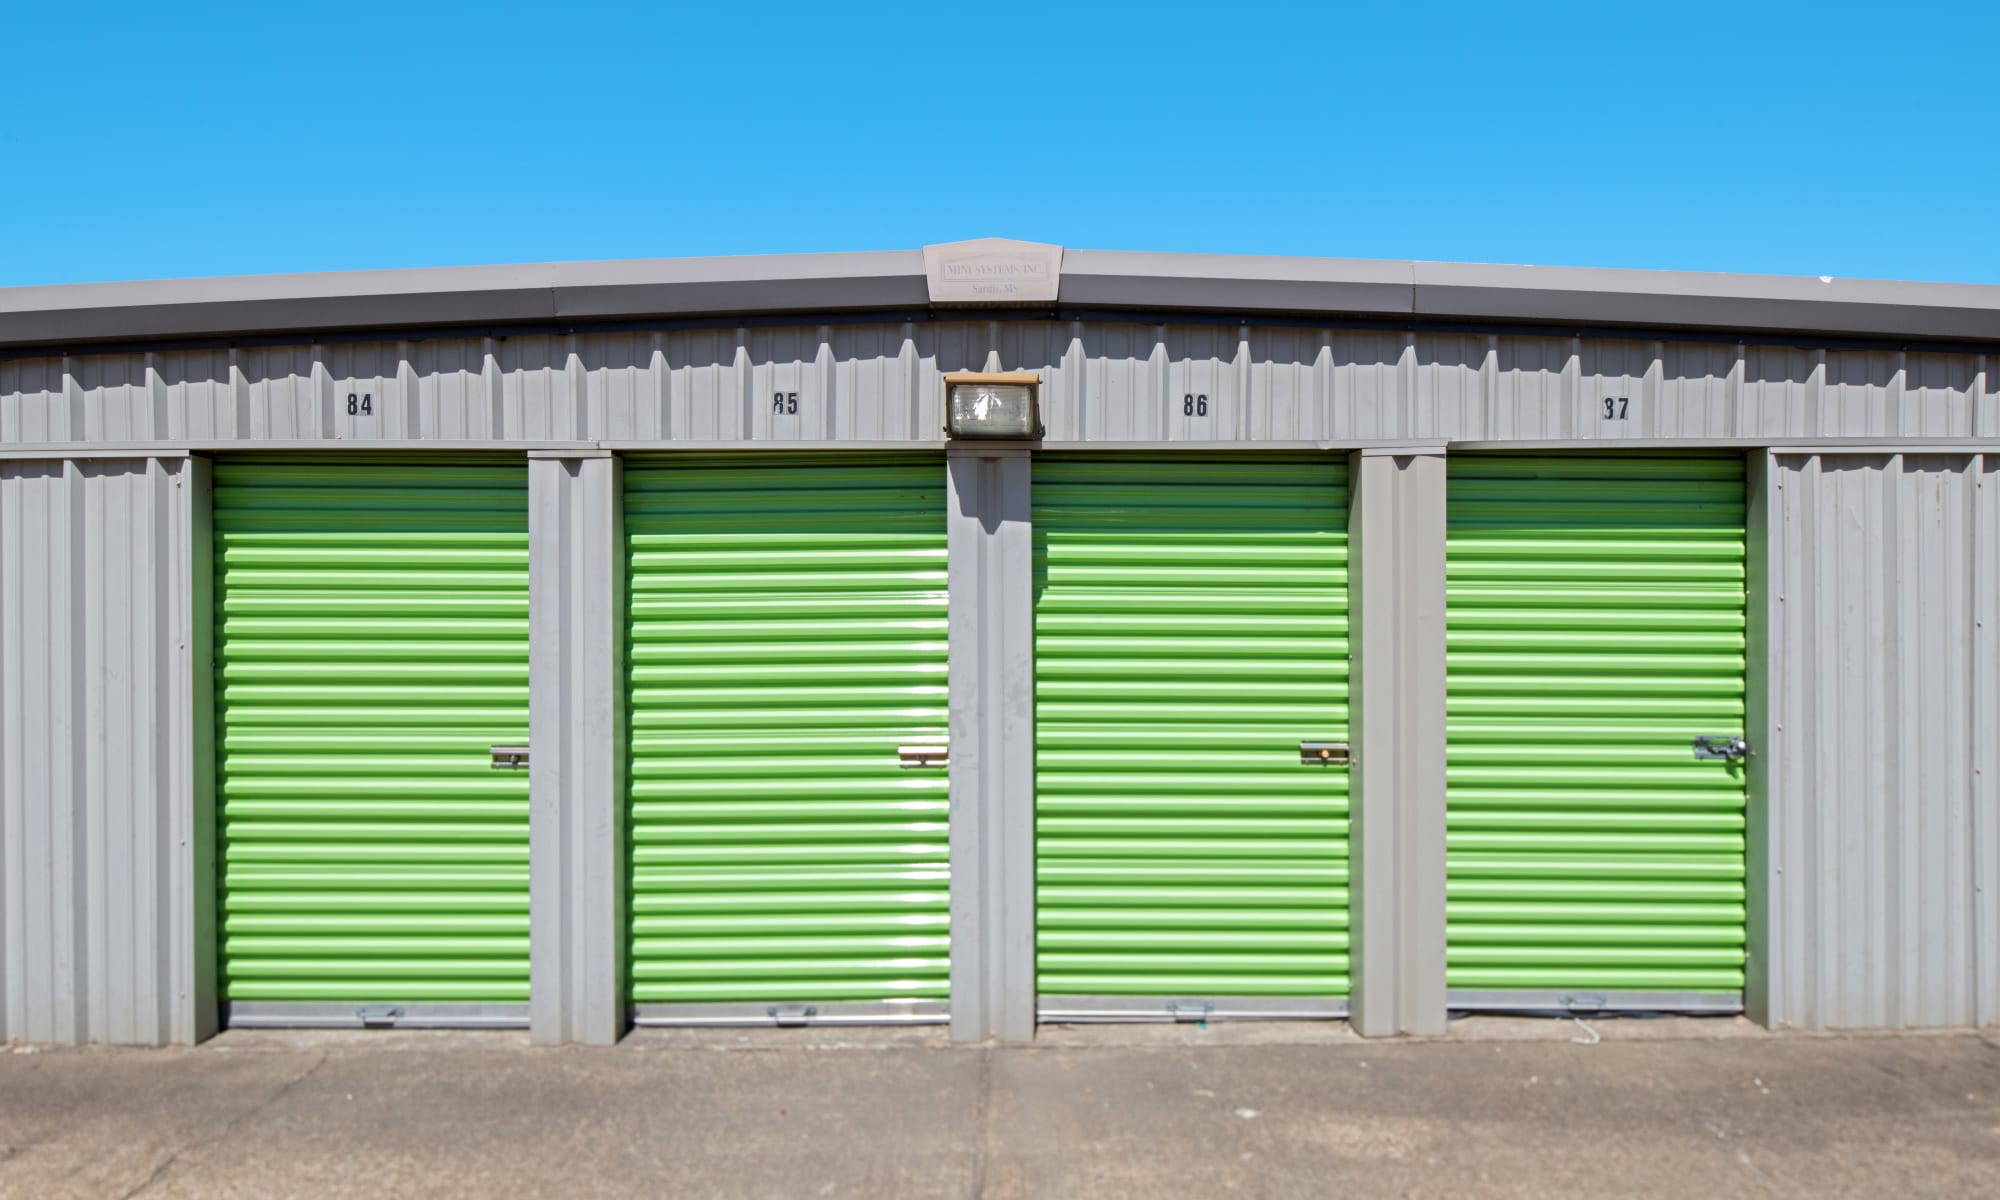 Exterior Storage Units at Citizen Storage in Bartlett, Tennessee